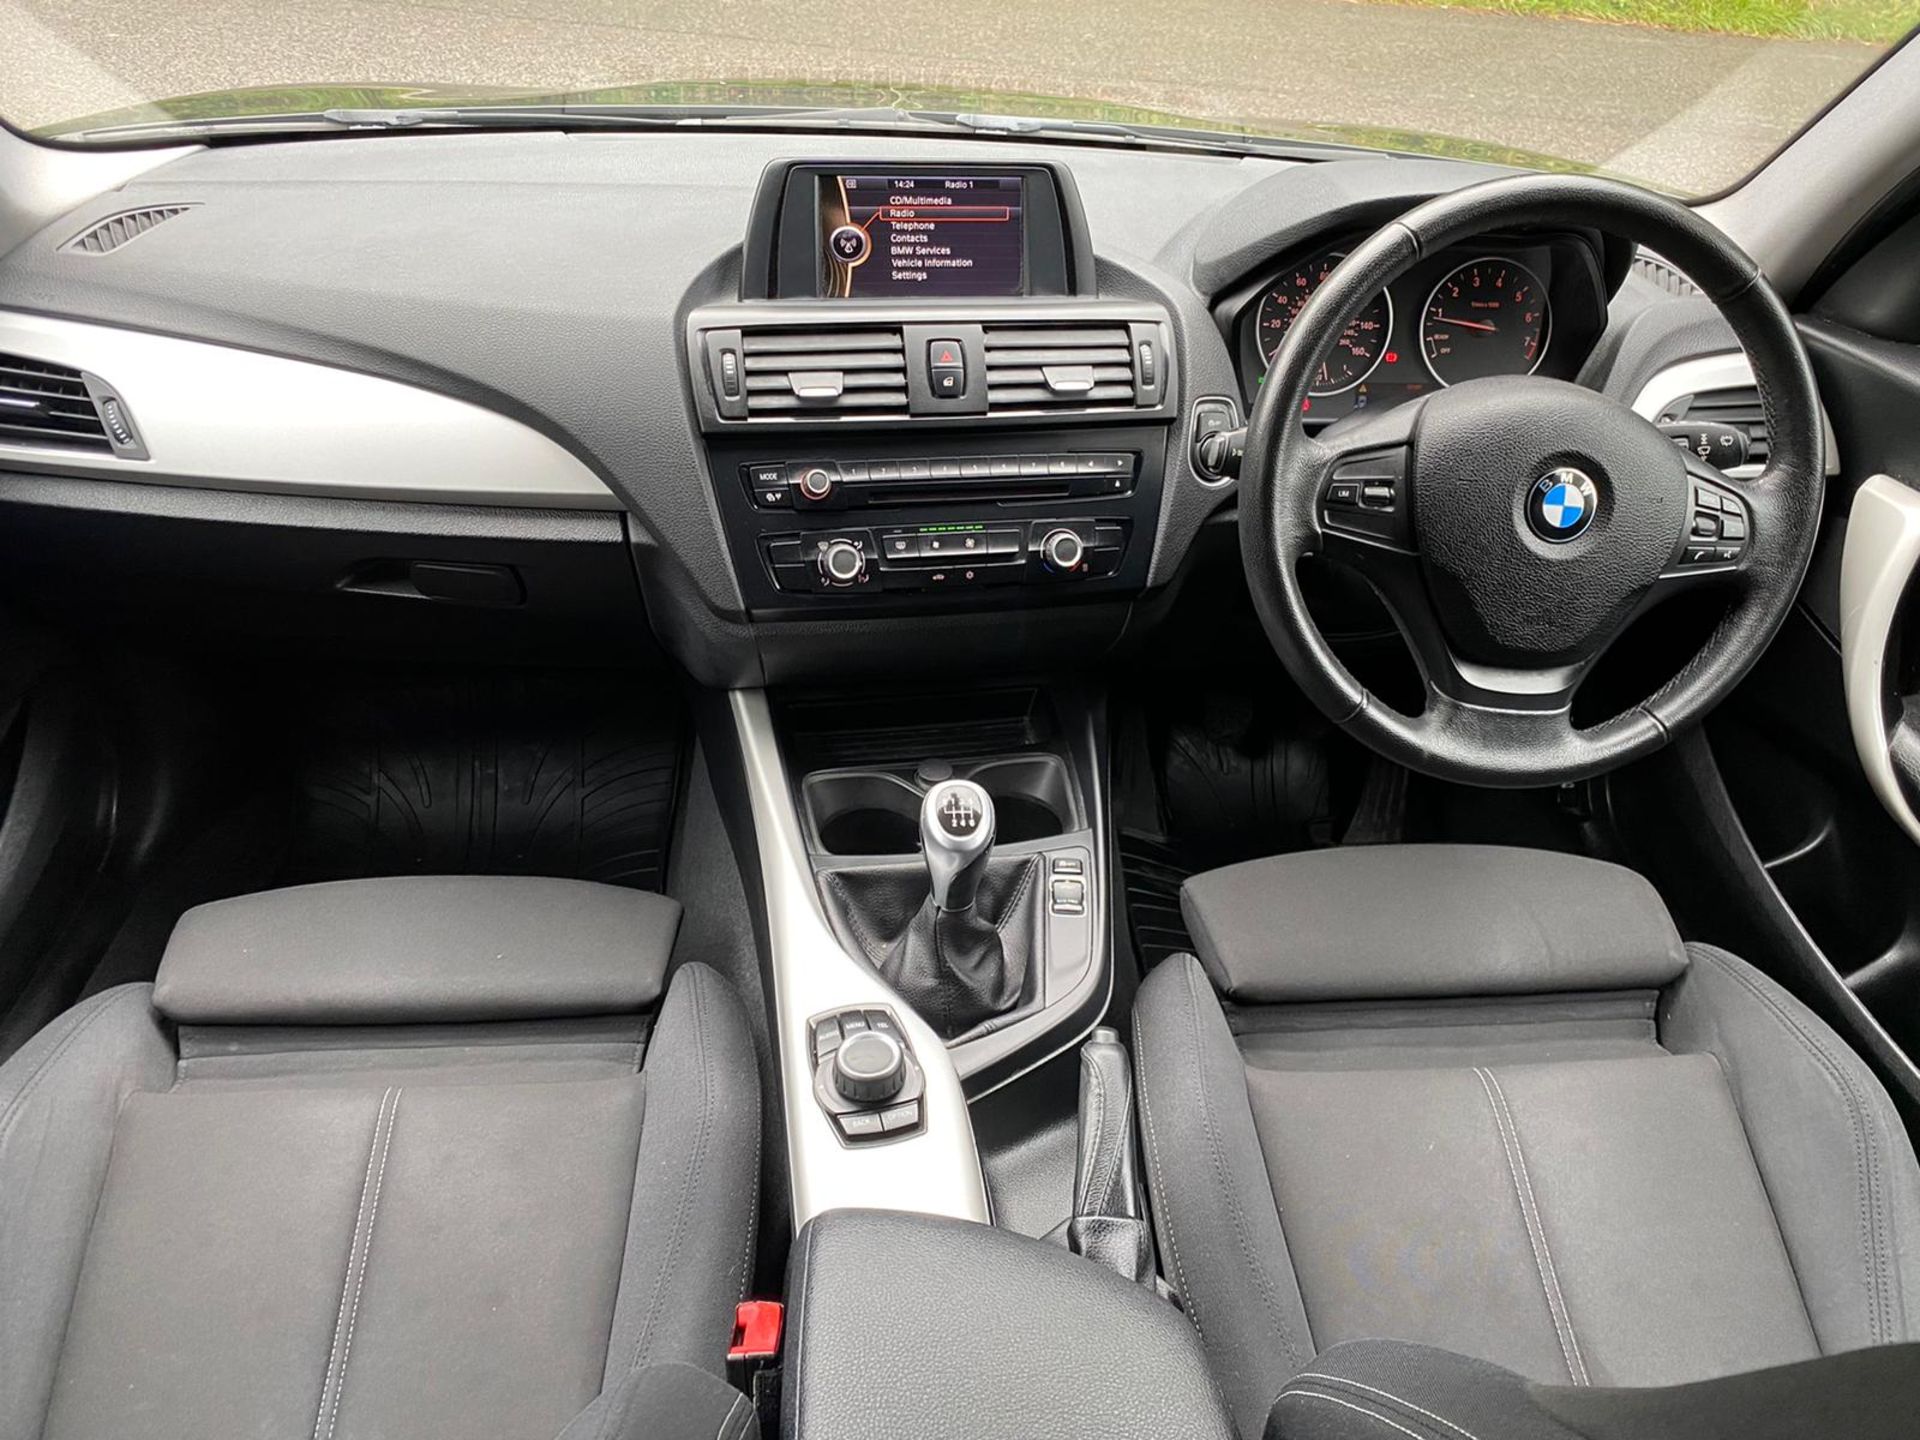 2012/12 REG BMW 116I SE TURBO 1.6 PETROL BLACK 5 DOOR HATCHBACK, SHOWING 3 FORMER KEEPERS *NO VAT* - Image 13 of 14